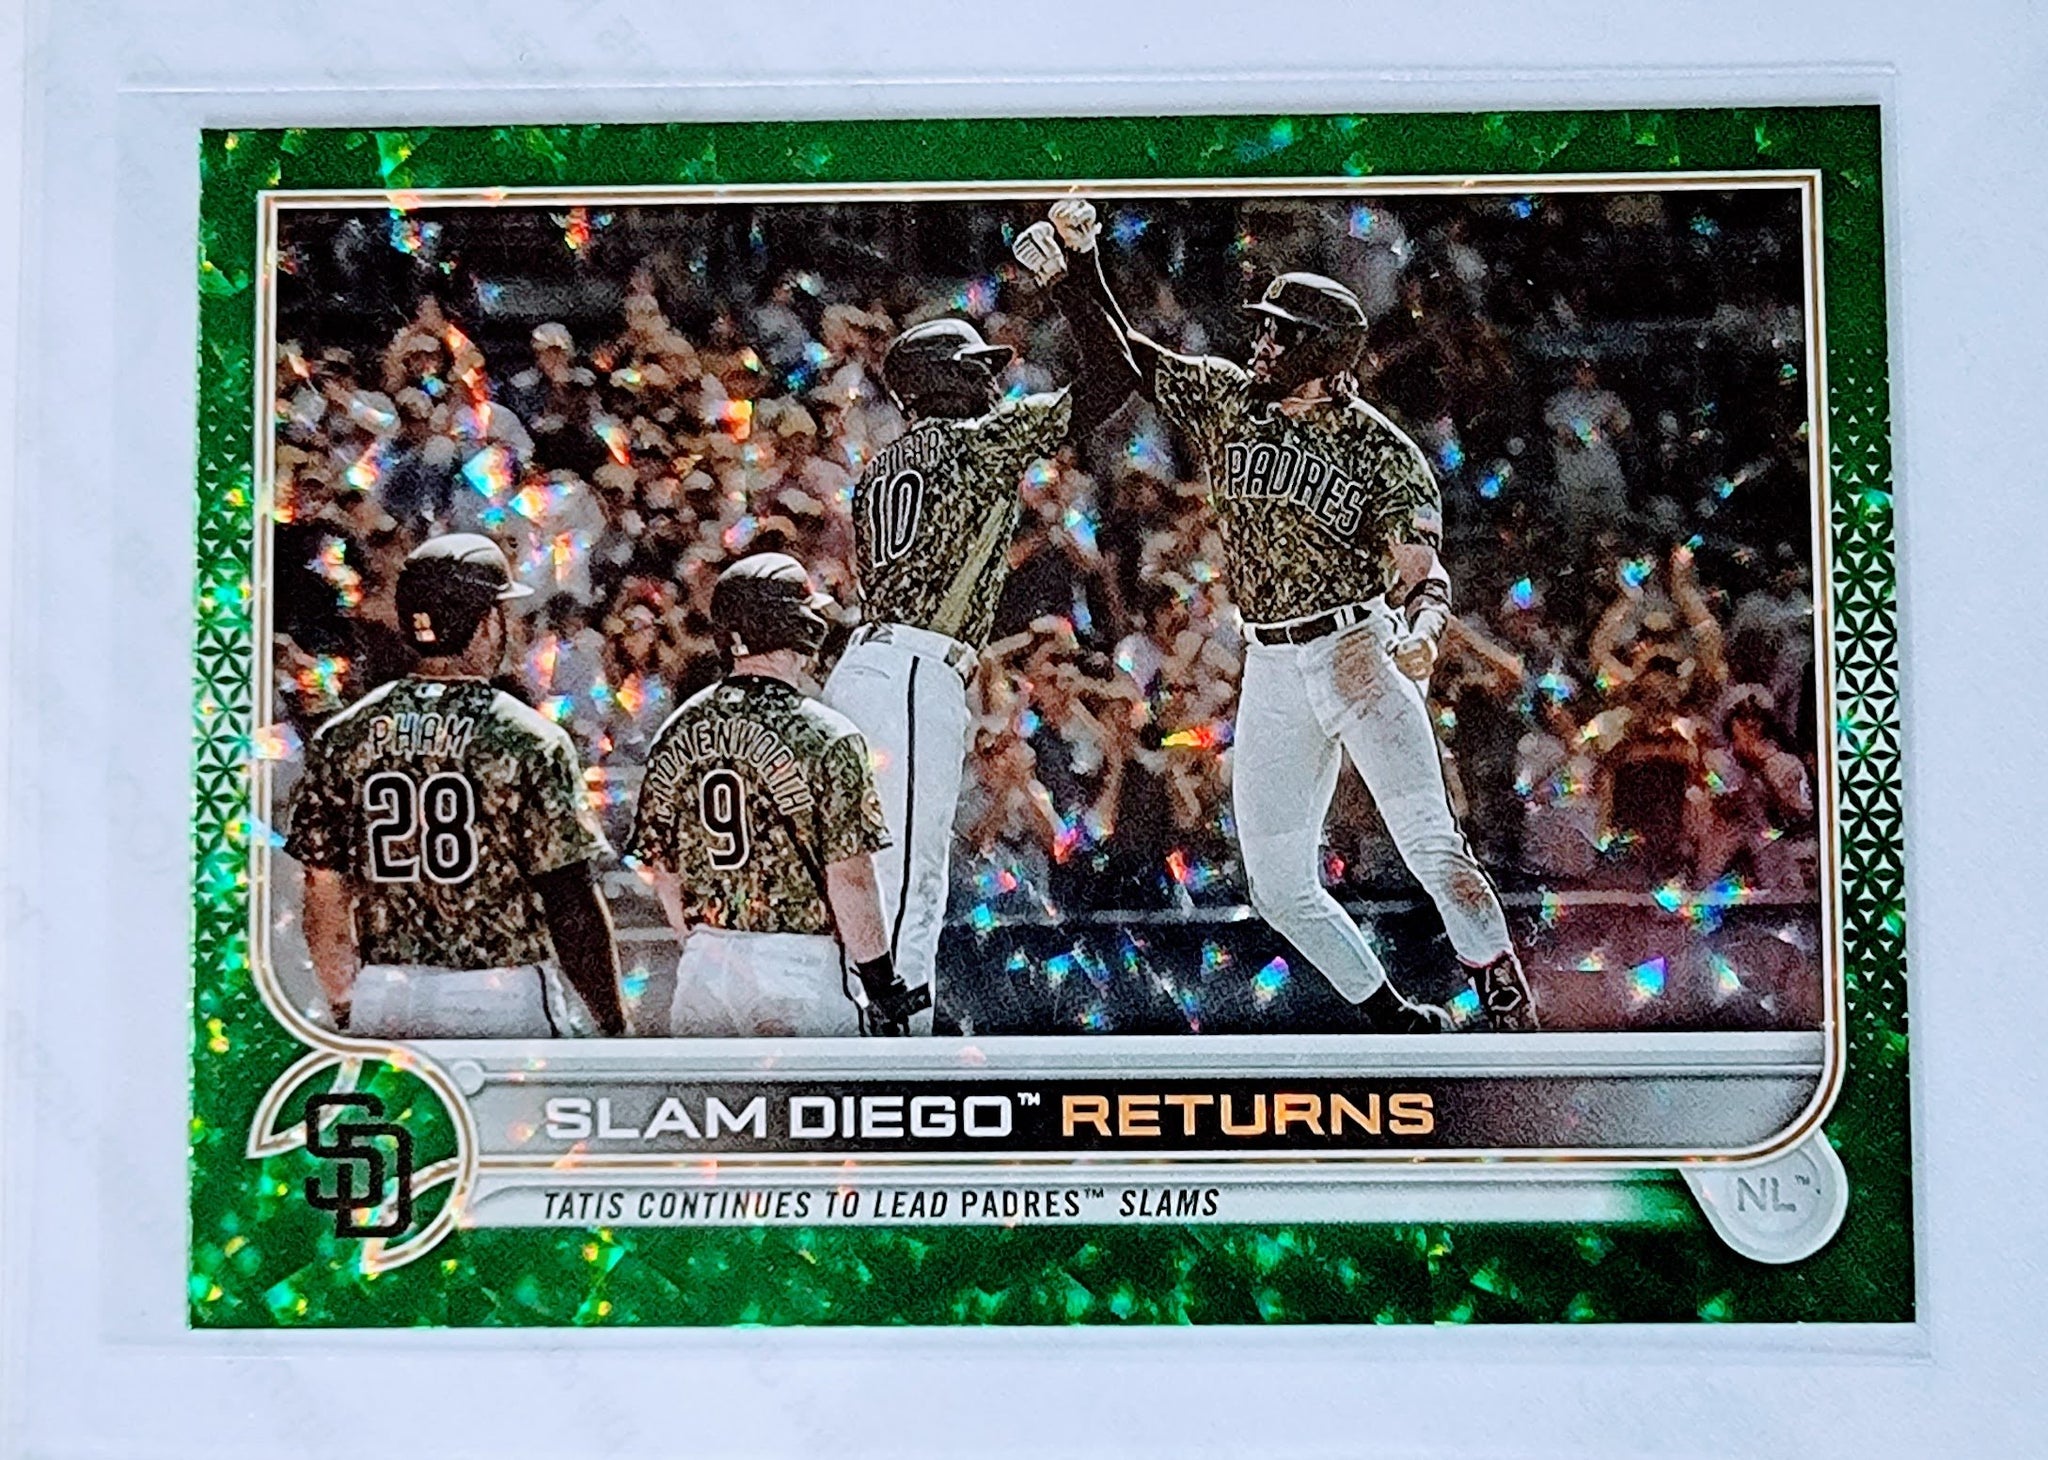 2022 Topps Slam Diego Returns Green Foil Refractor Baseball